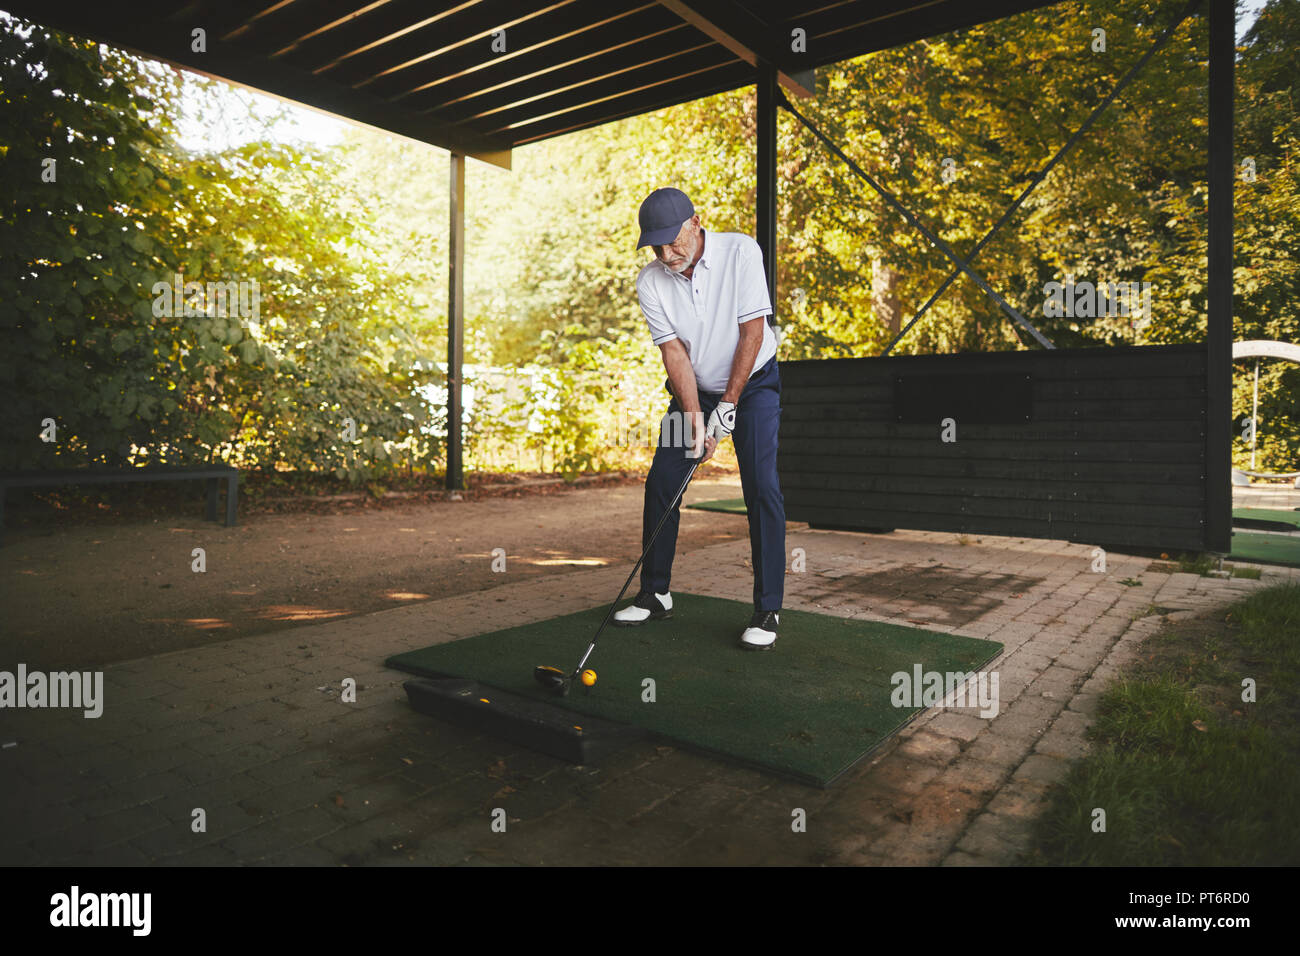 Sporty man à un raccord en t pratiquer son swing de golf à une autonomie sur une journée ensoleillée Banque D'Images